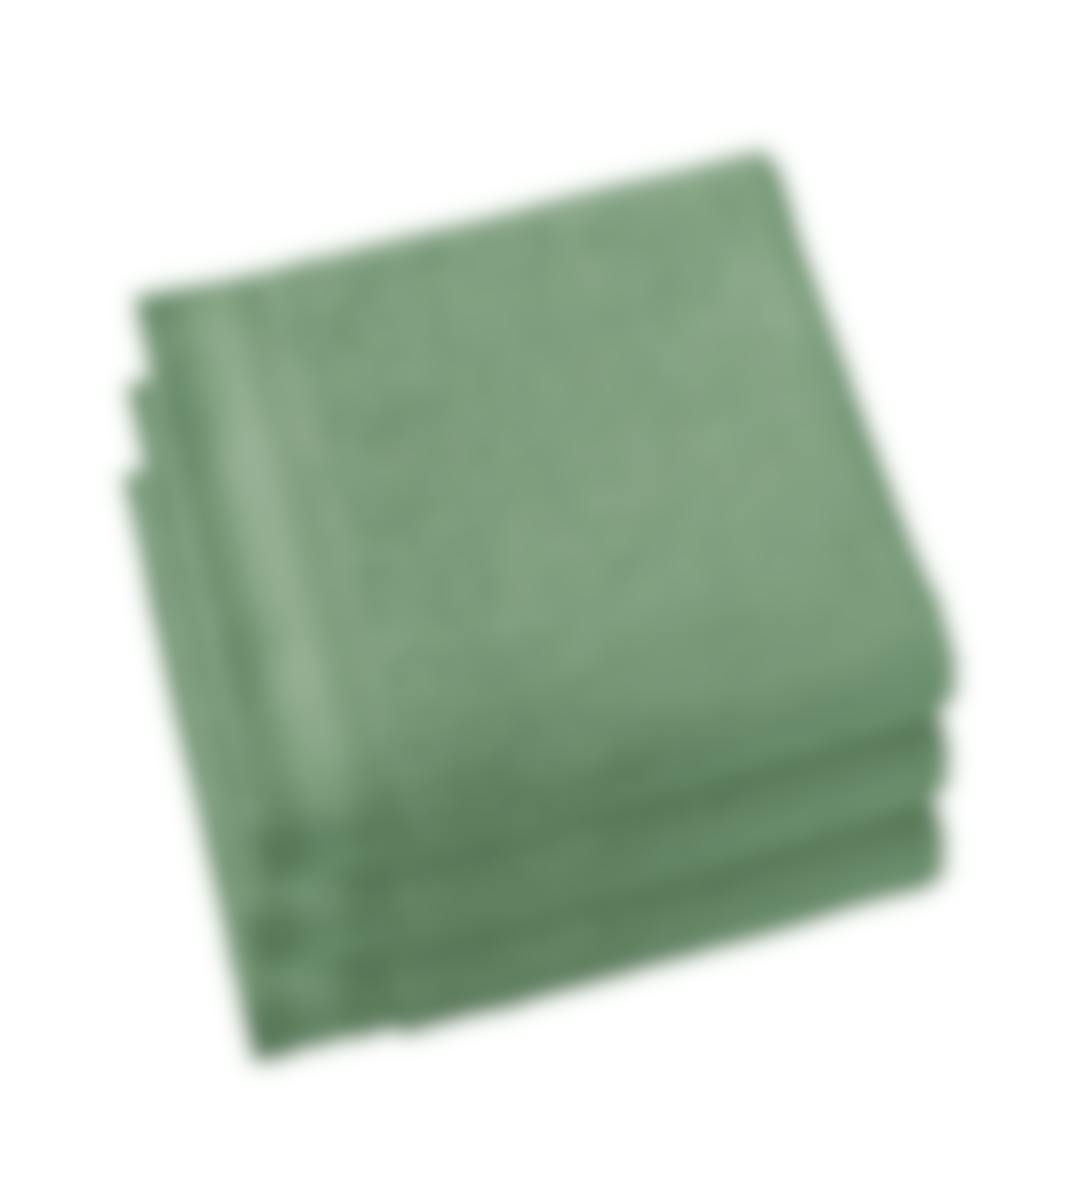 De Witte Lietaer handdoek Contessa Sea Green 50 x 100 cm set van 3